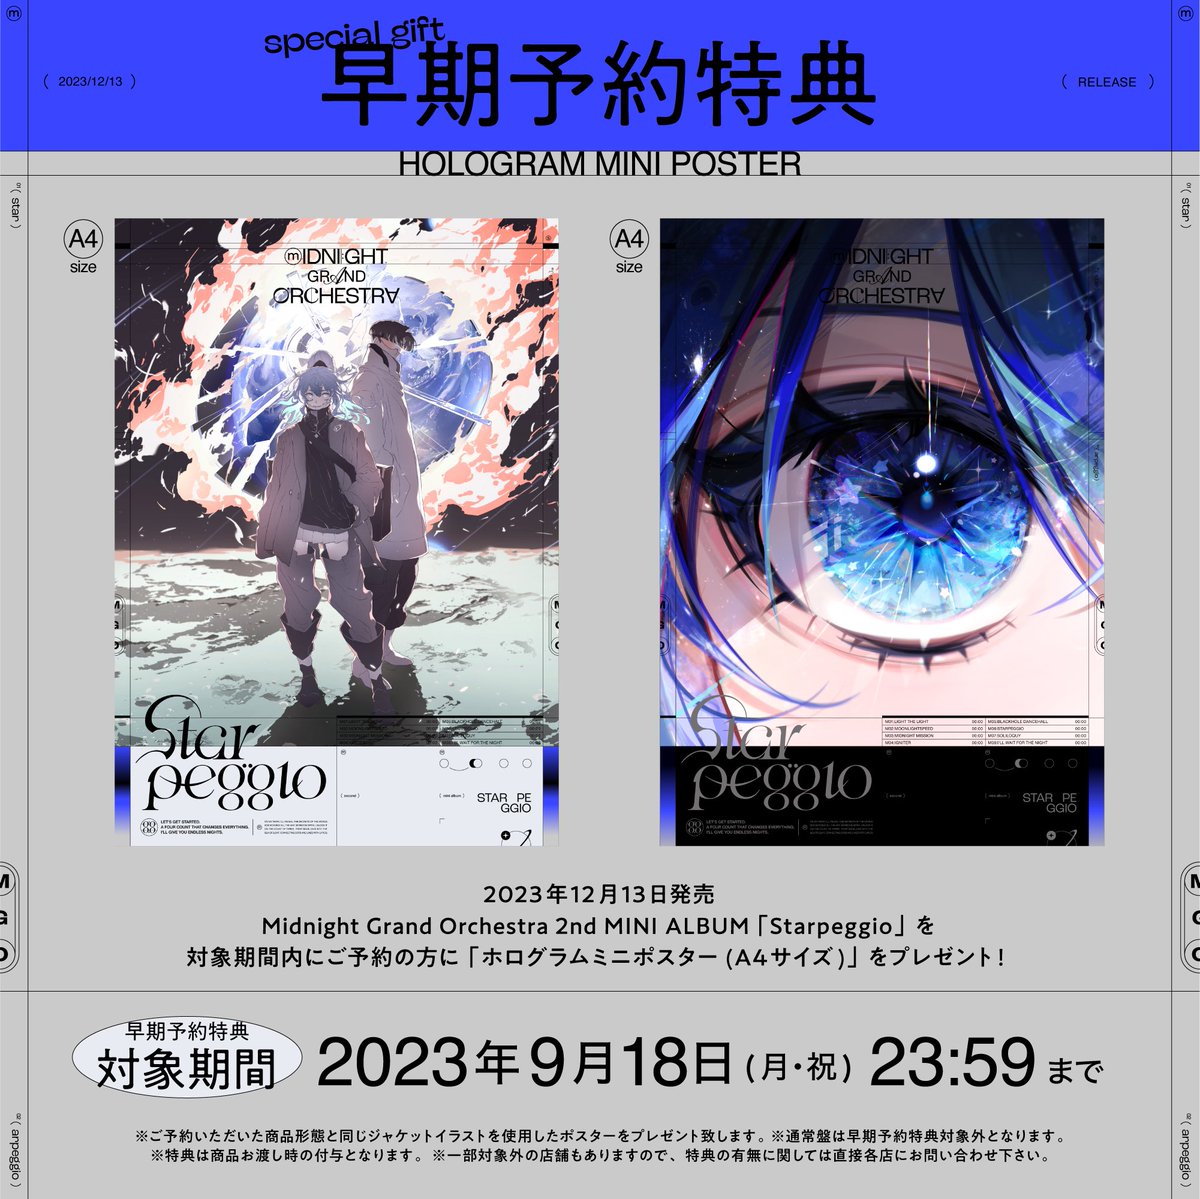 2023.12.13 Release 2nd MINI ALBUM『Starpeggio』 Starpeggio Special site midnight-grand-orchestra.jp/starpeggio/